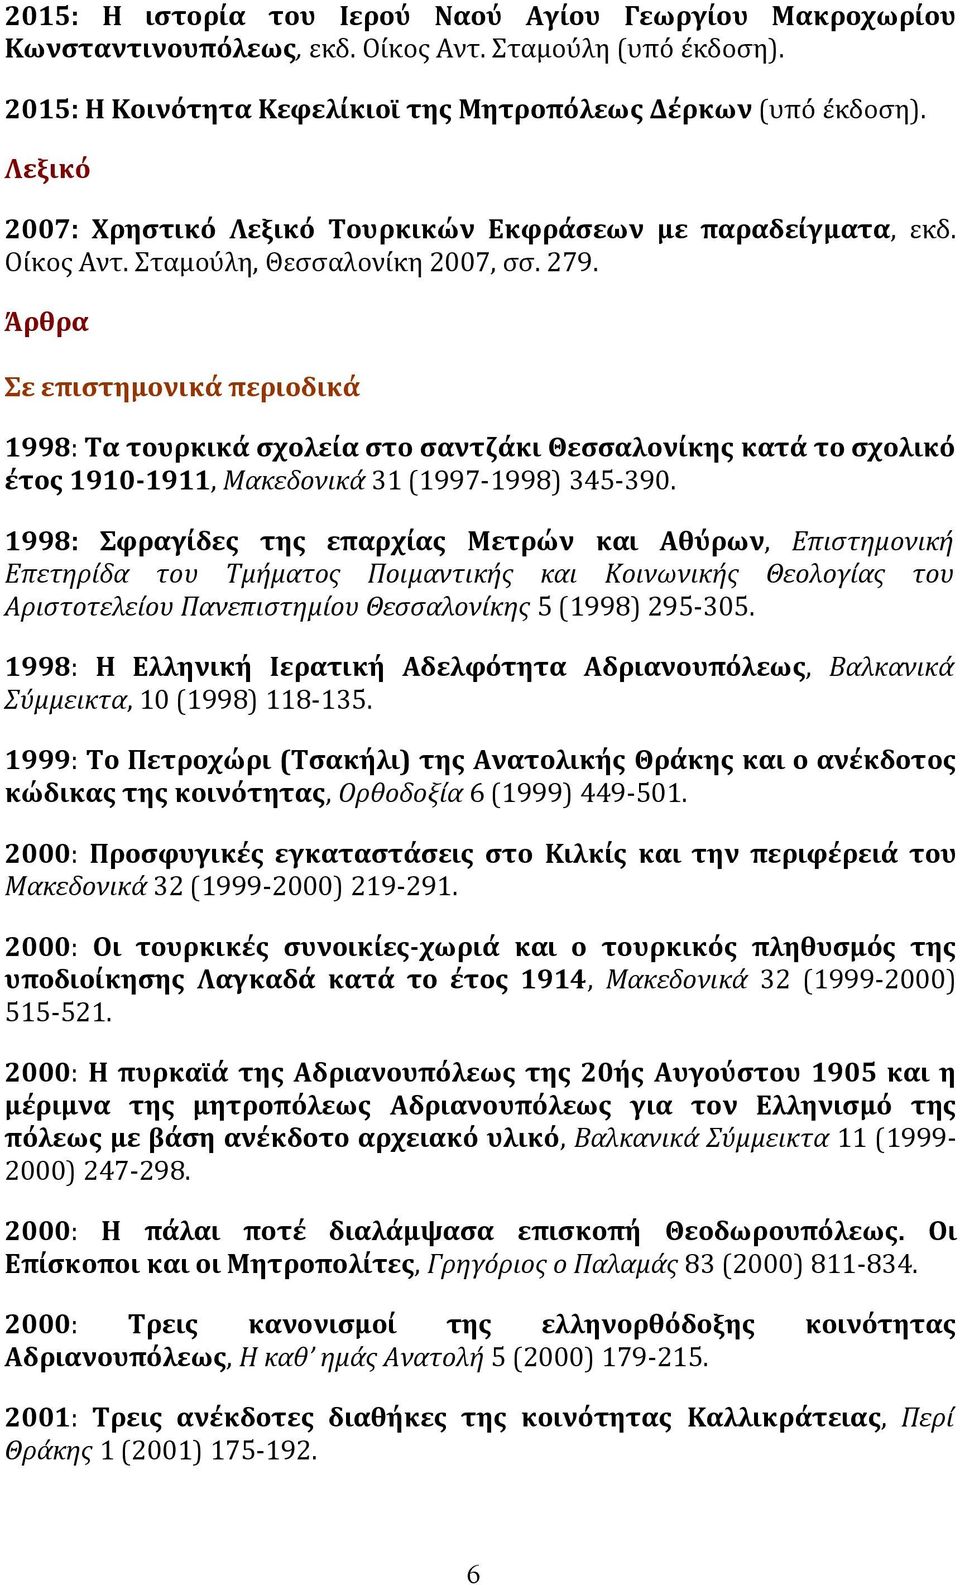 Άρθρα Σε επιστημονικά περιοδικά 1998: Tα τουρκικά σχολεία στο σαντζάκι Θεσσαλονίκης κατά το σχολικό έτος 1910-1911, Mακεδονικά 31 (1997-1998) 345-390.